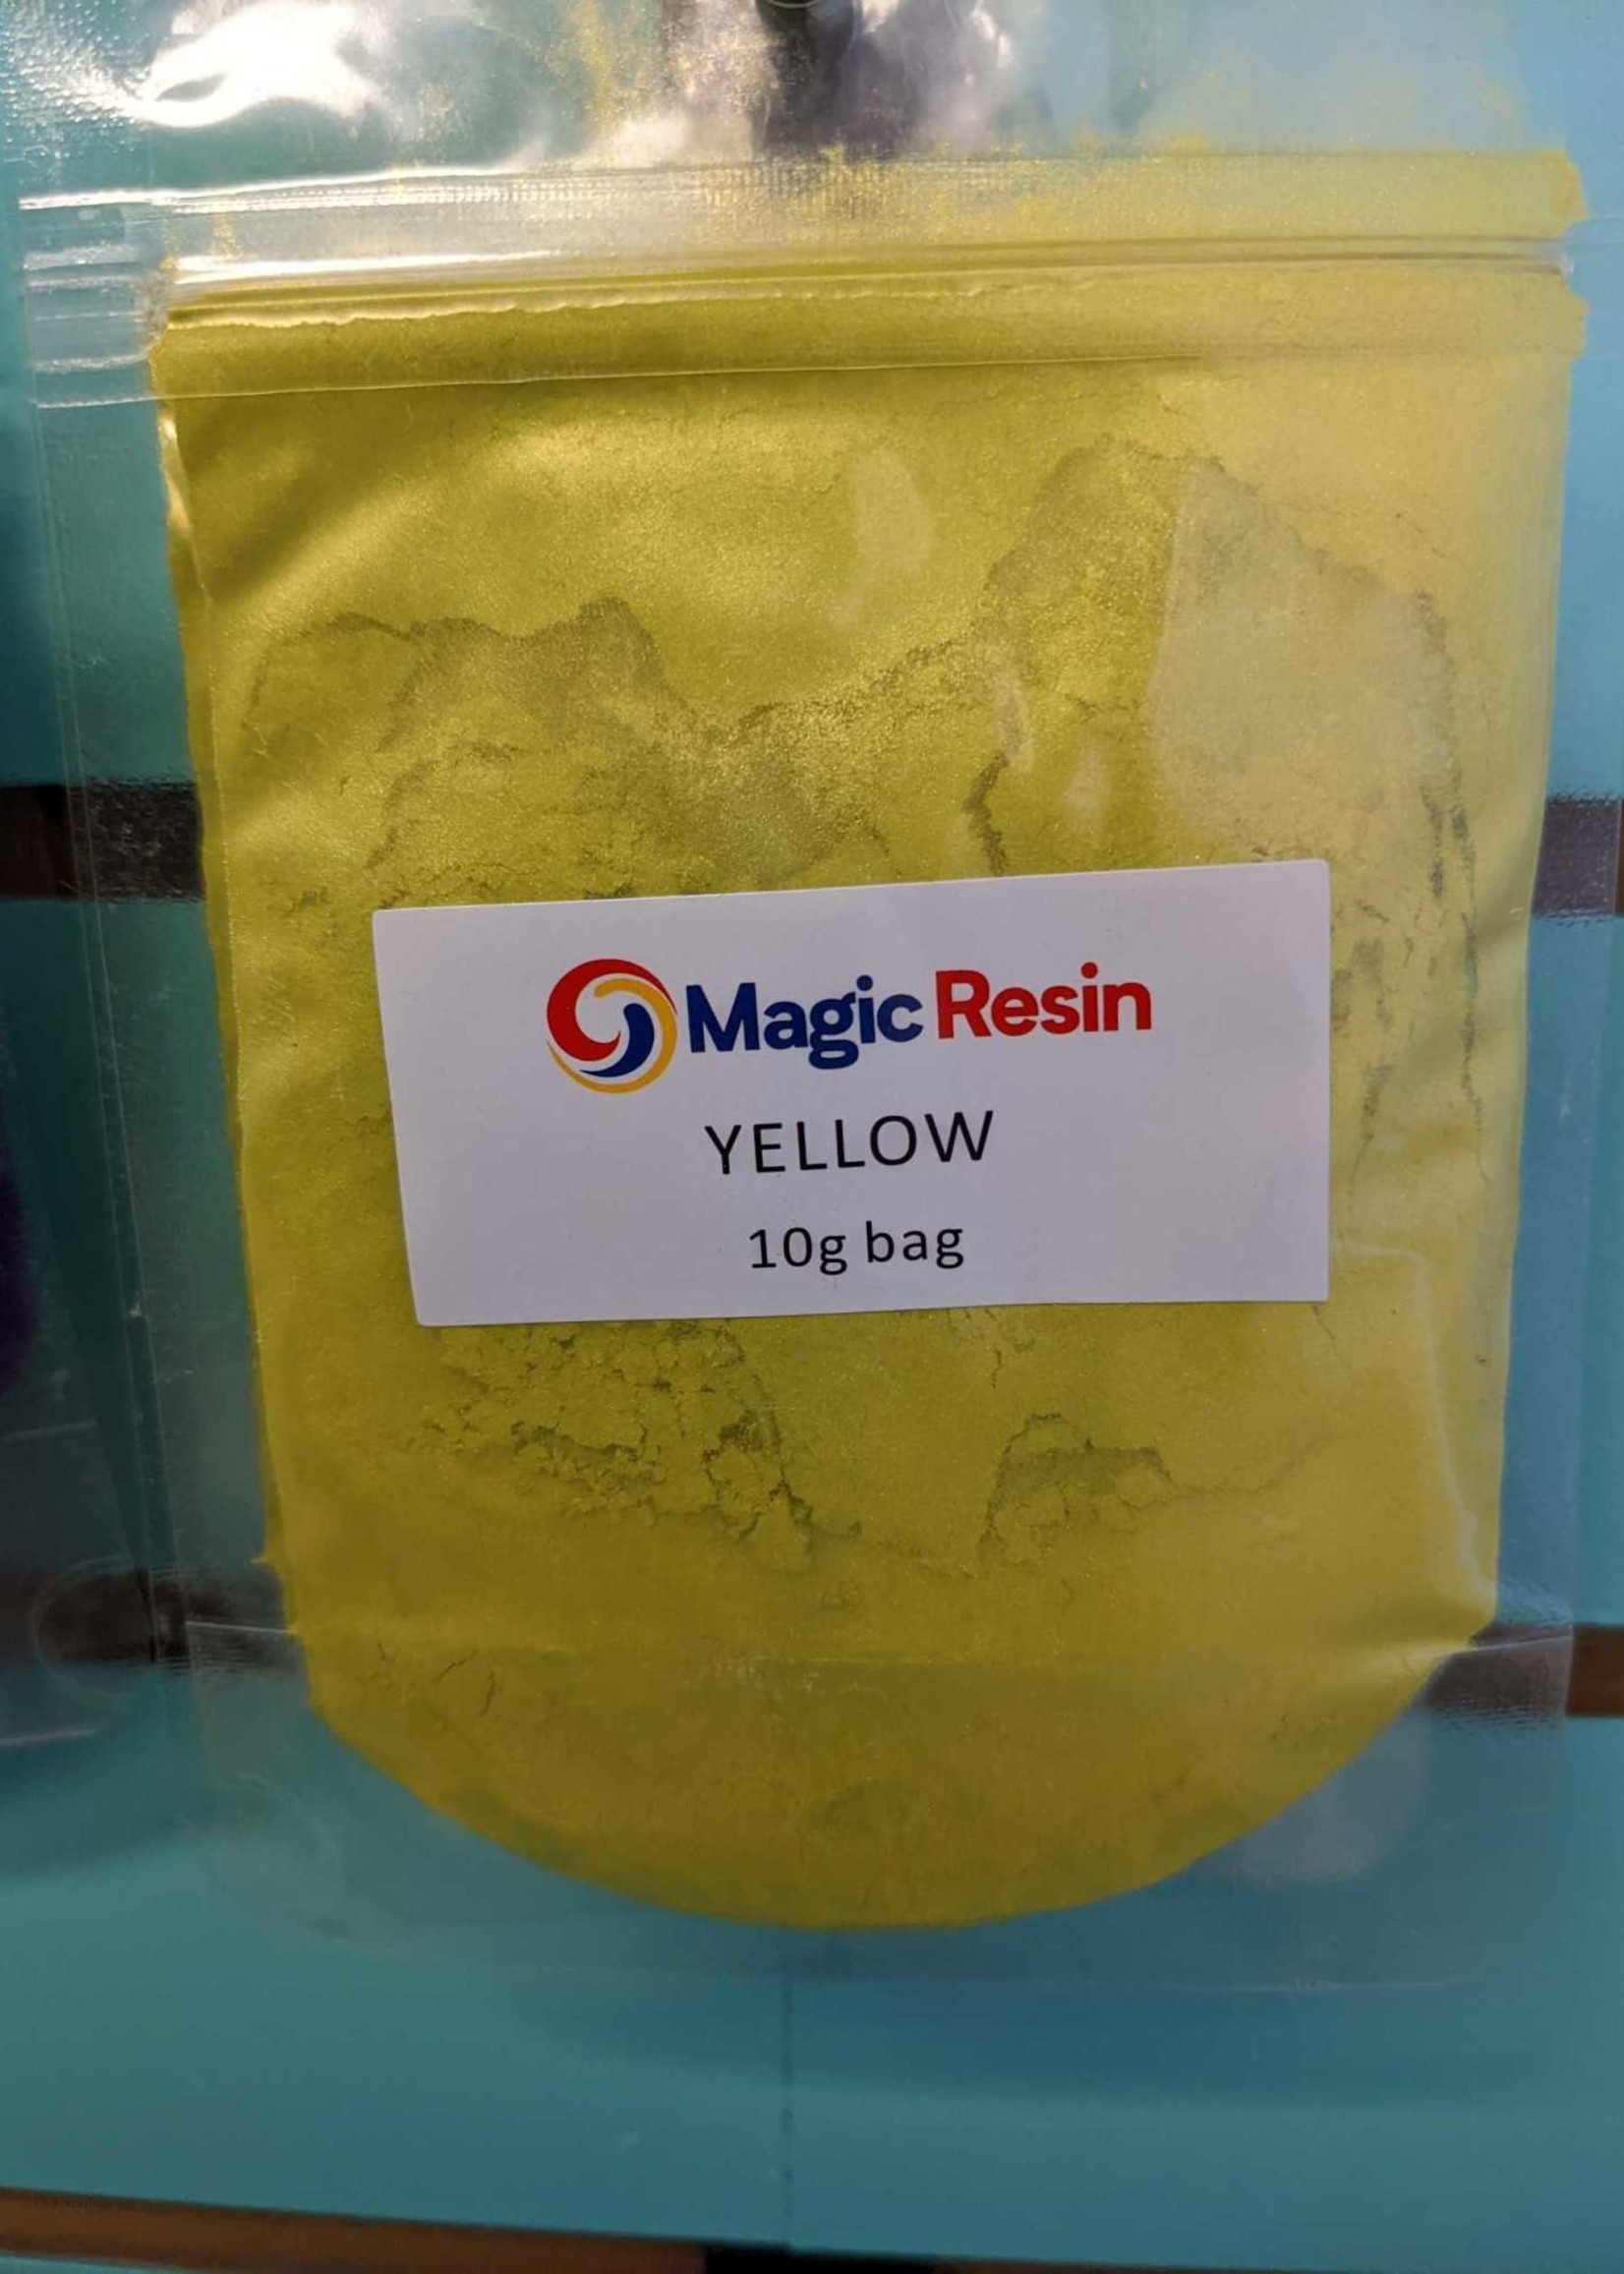 Magic Resin Mica powder